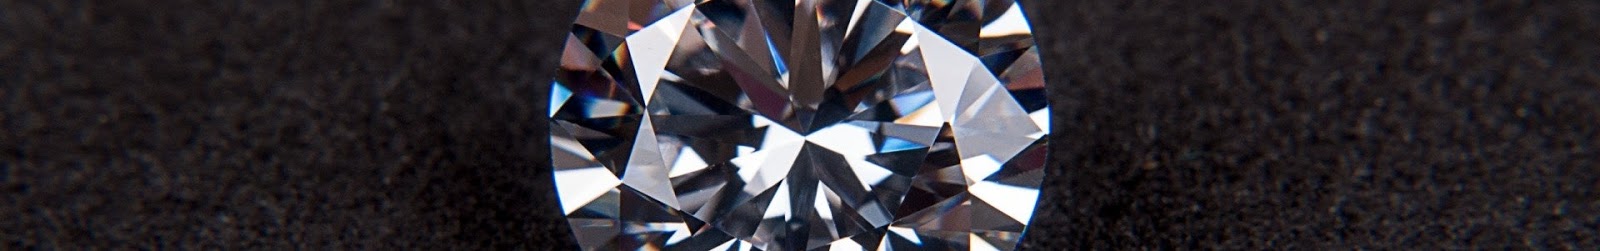 Diamond Shapes to Know